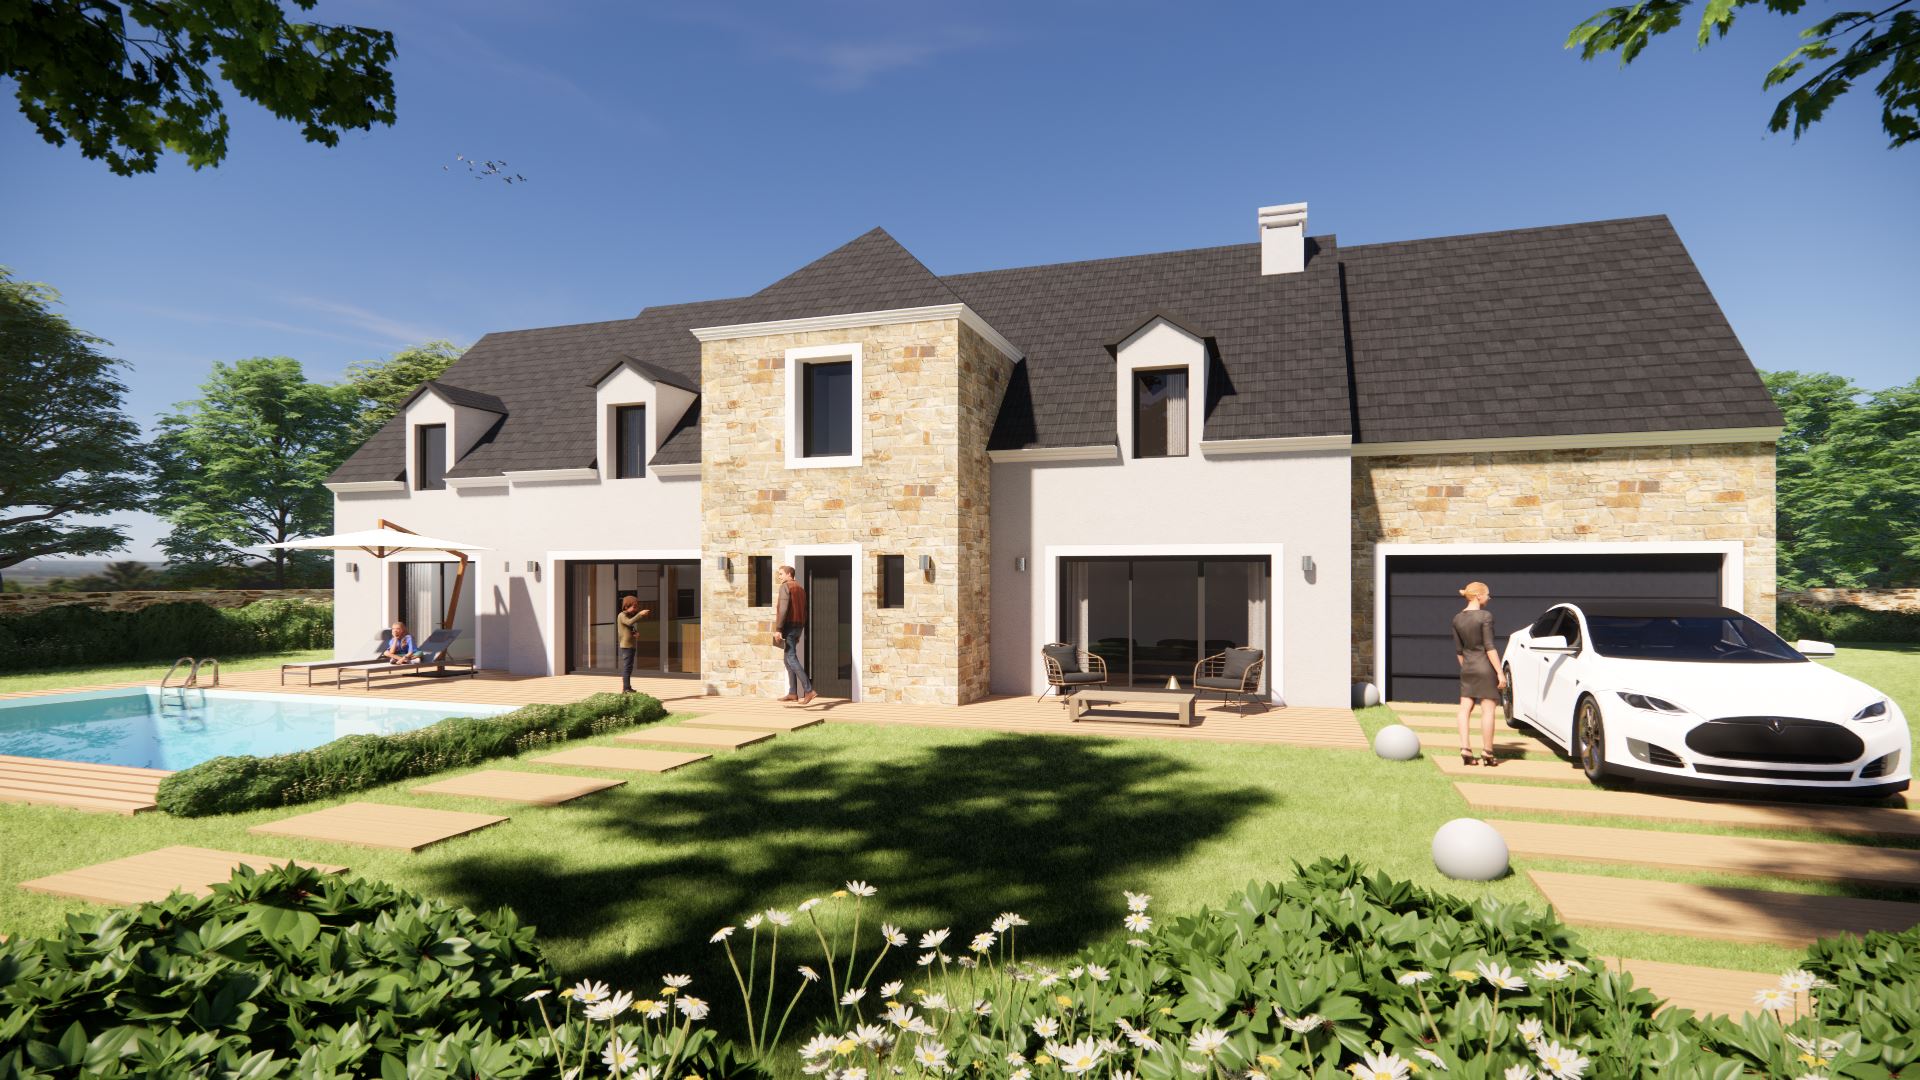 Modele De Plan Pour Construire Une Maison En France | Ventana Blog